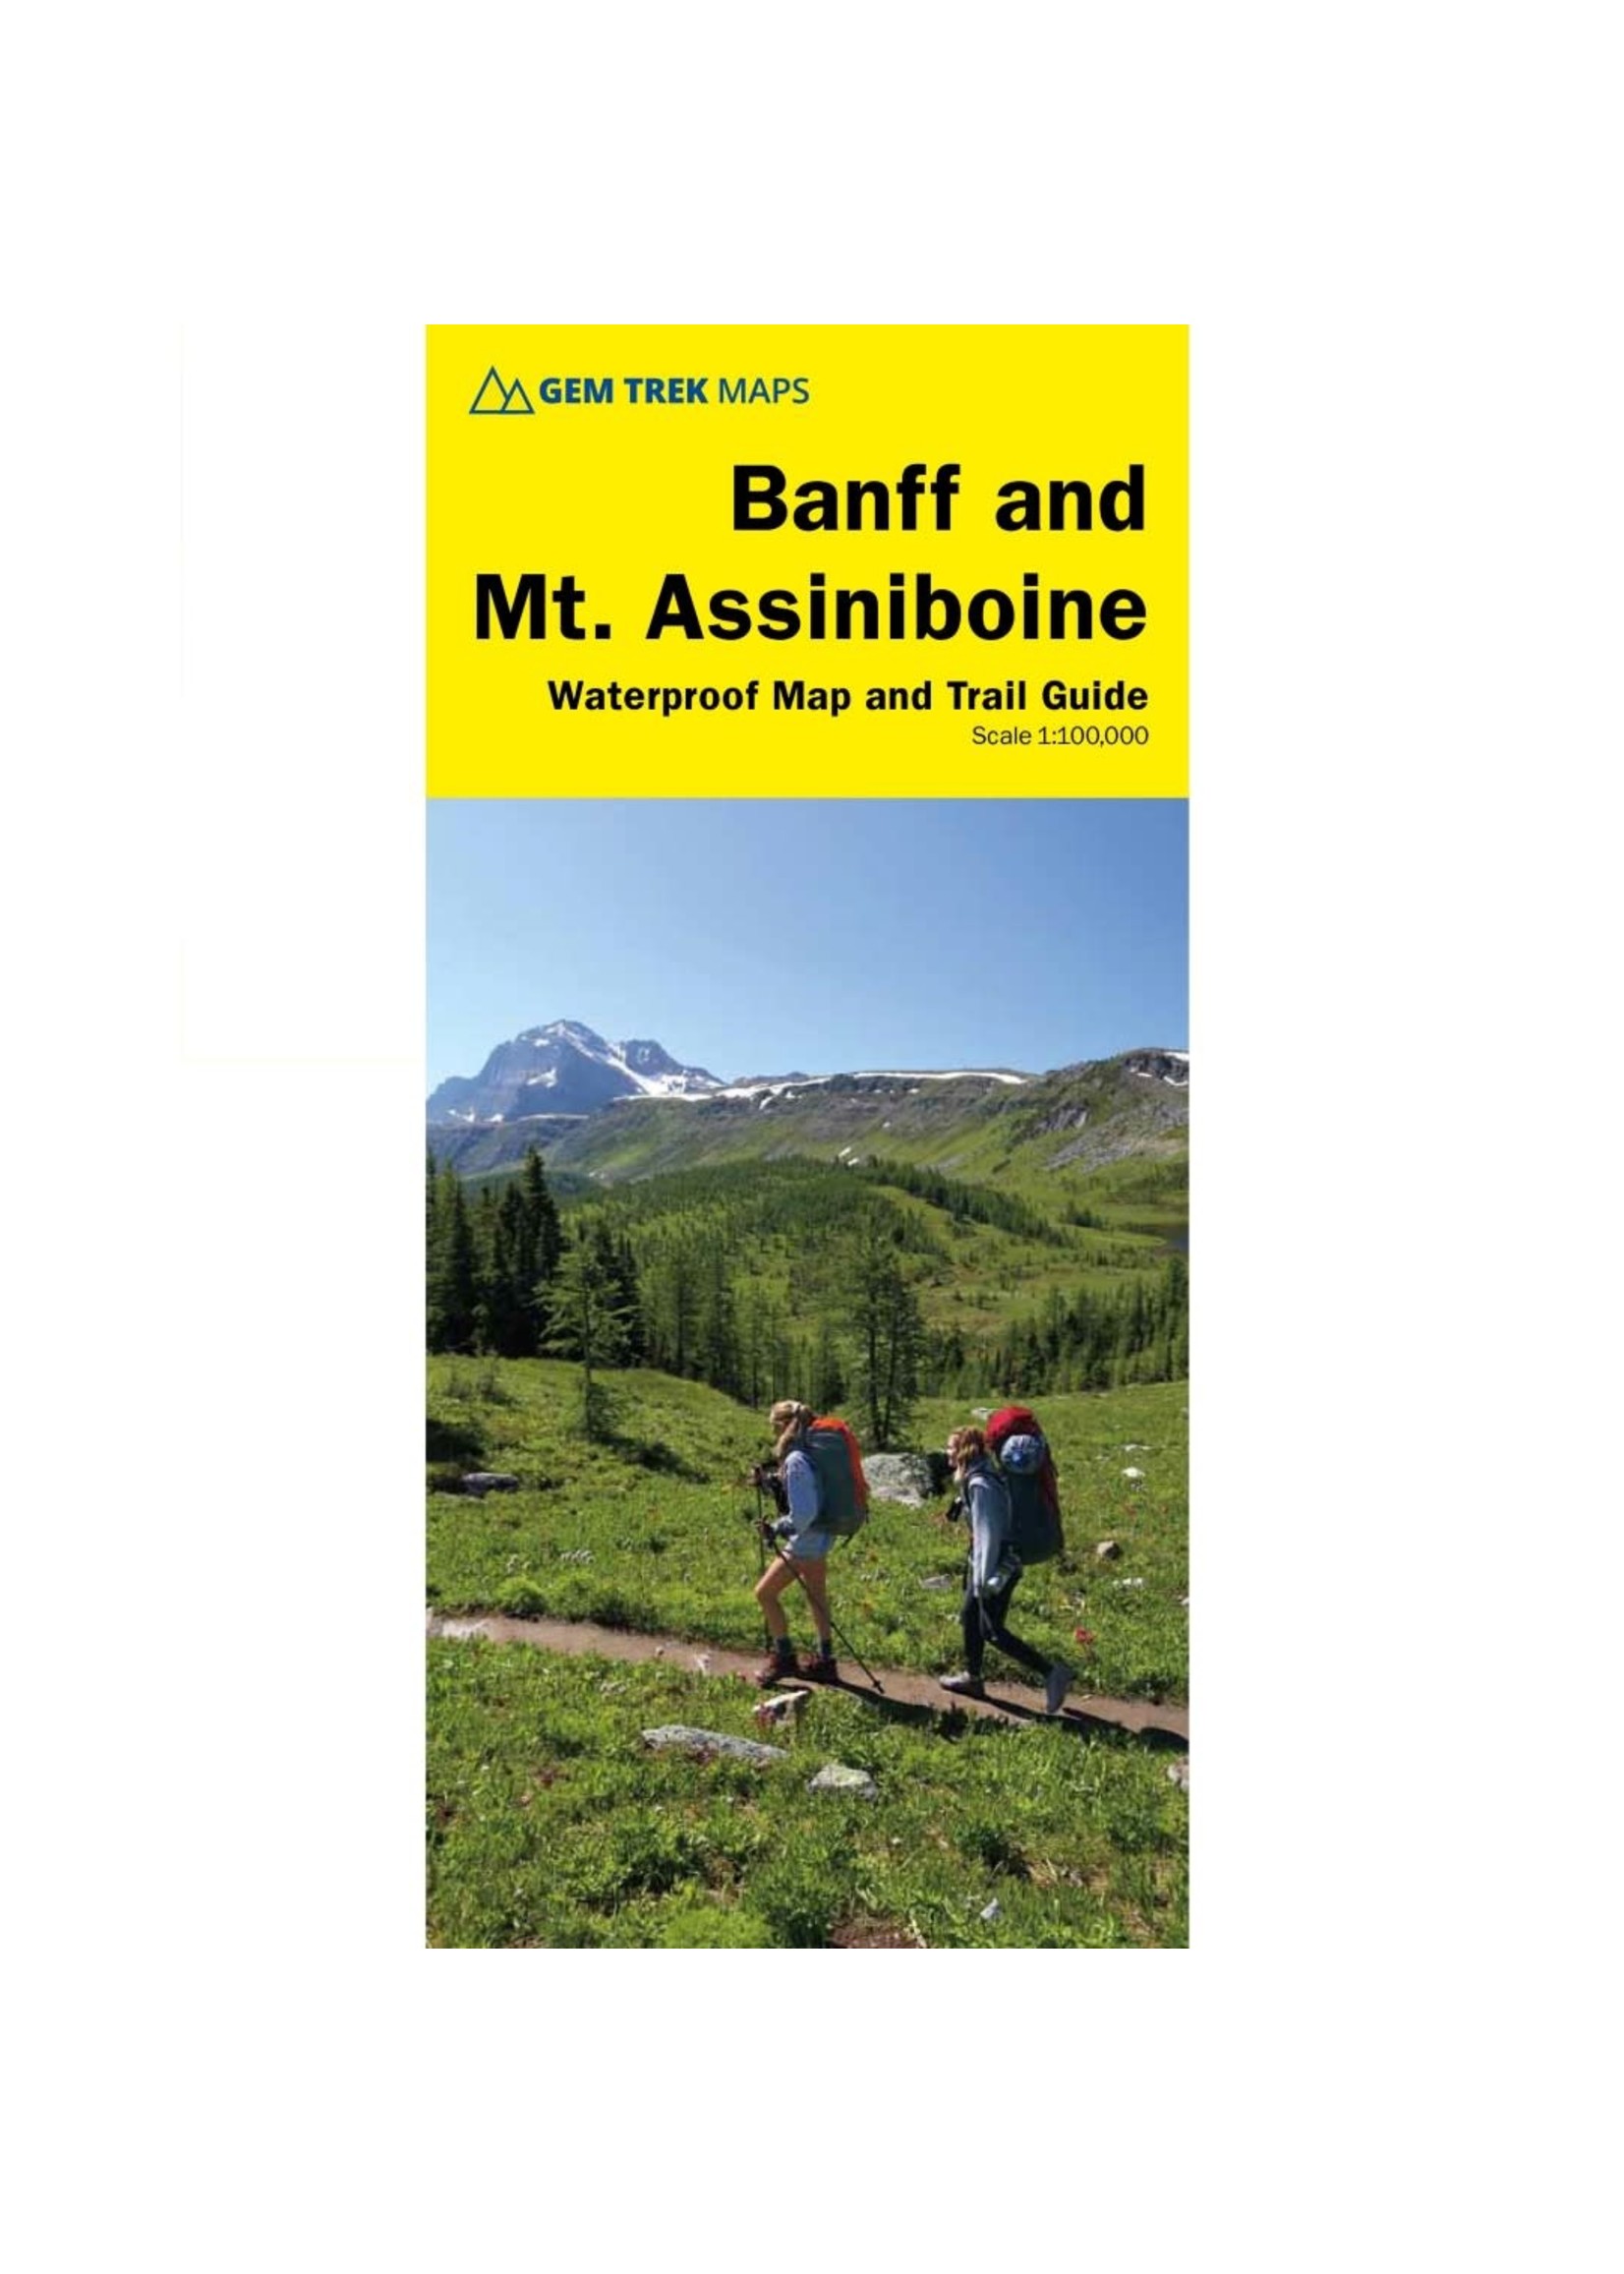 Gemtrek map Banff &  Mount Assiniboine